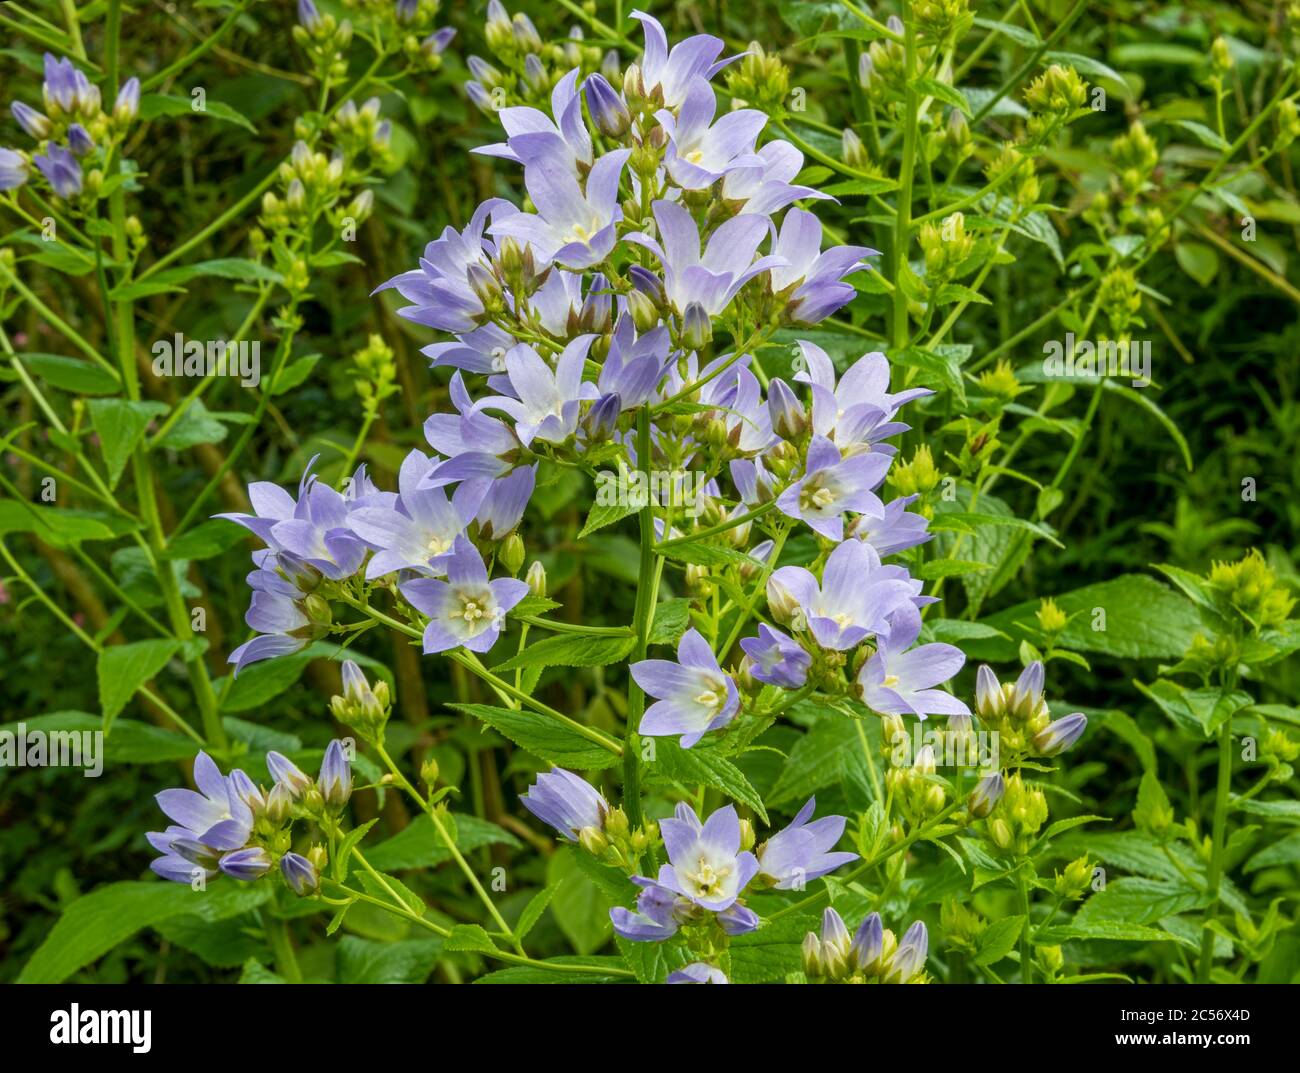 Nahaufnahme der Pake blau violett Campanula lactiflora (Milchblume) in der Grenze mit verschwommenem grünem Laub im Hintergrund. Stockfoto